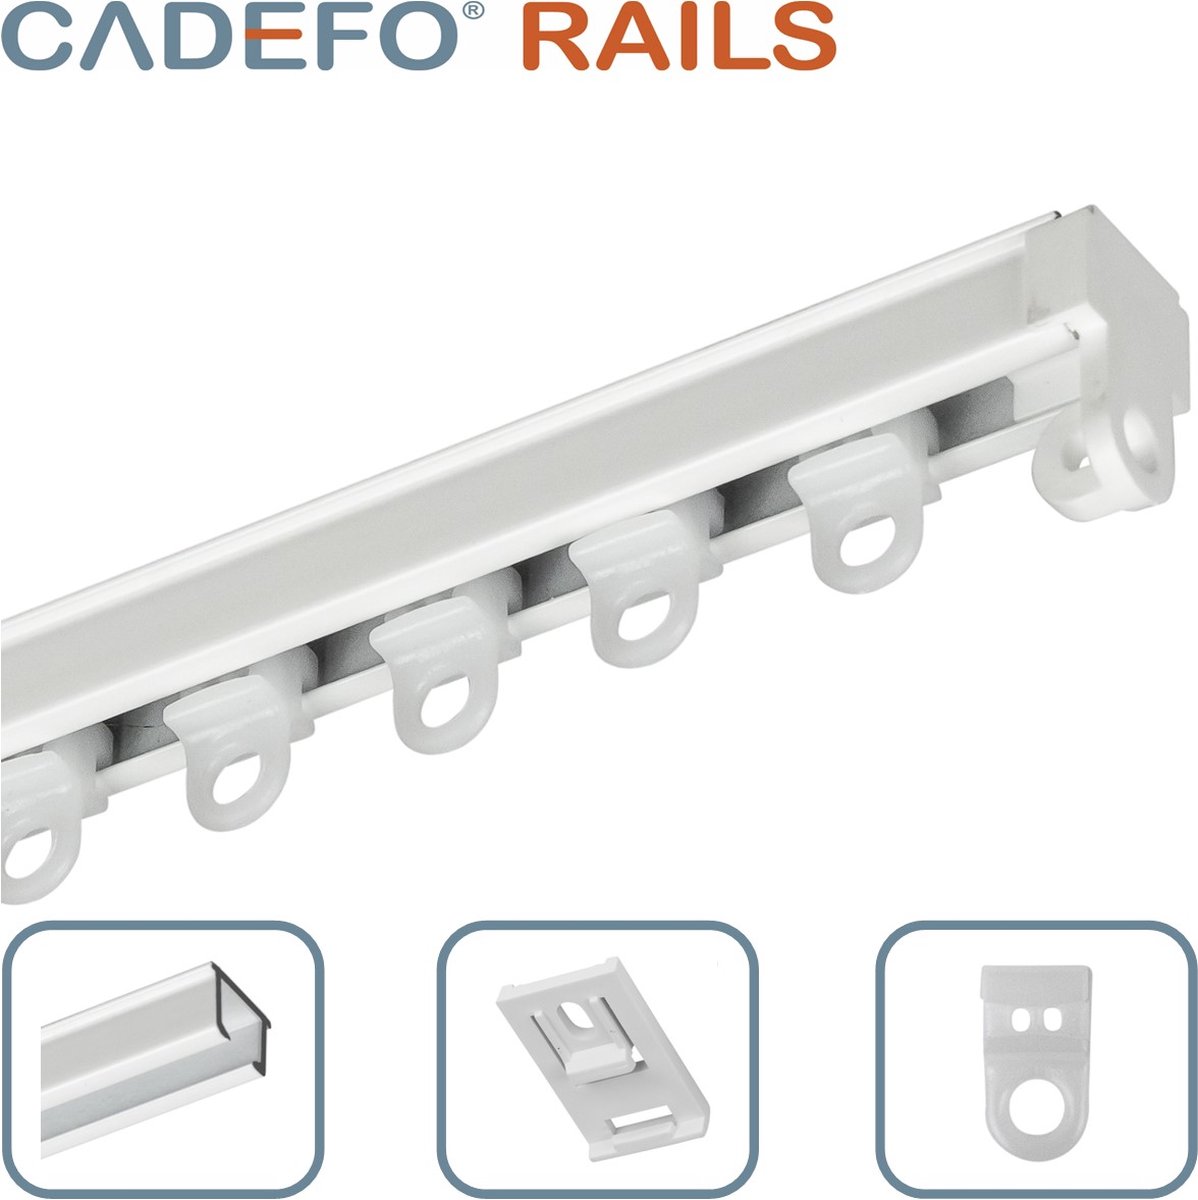 CADEFO RAILS (301 - 350 cm) Gordijnrails - Compleet op maat! - UIT 1 STUK - Leverbaar tot 6 meter - Plafondbevestiging - Lengte 308 cm